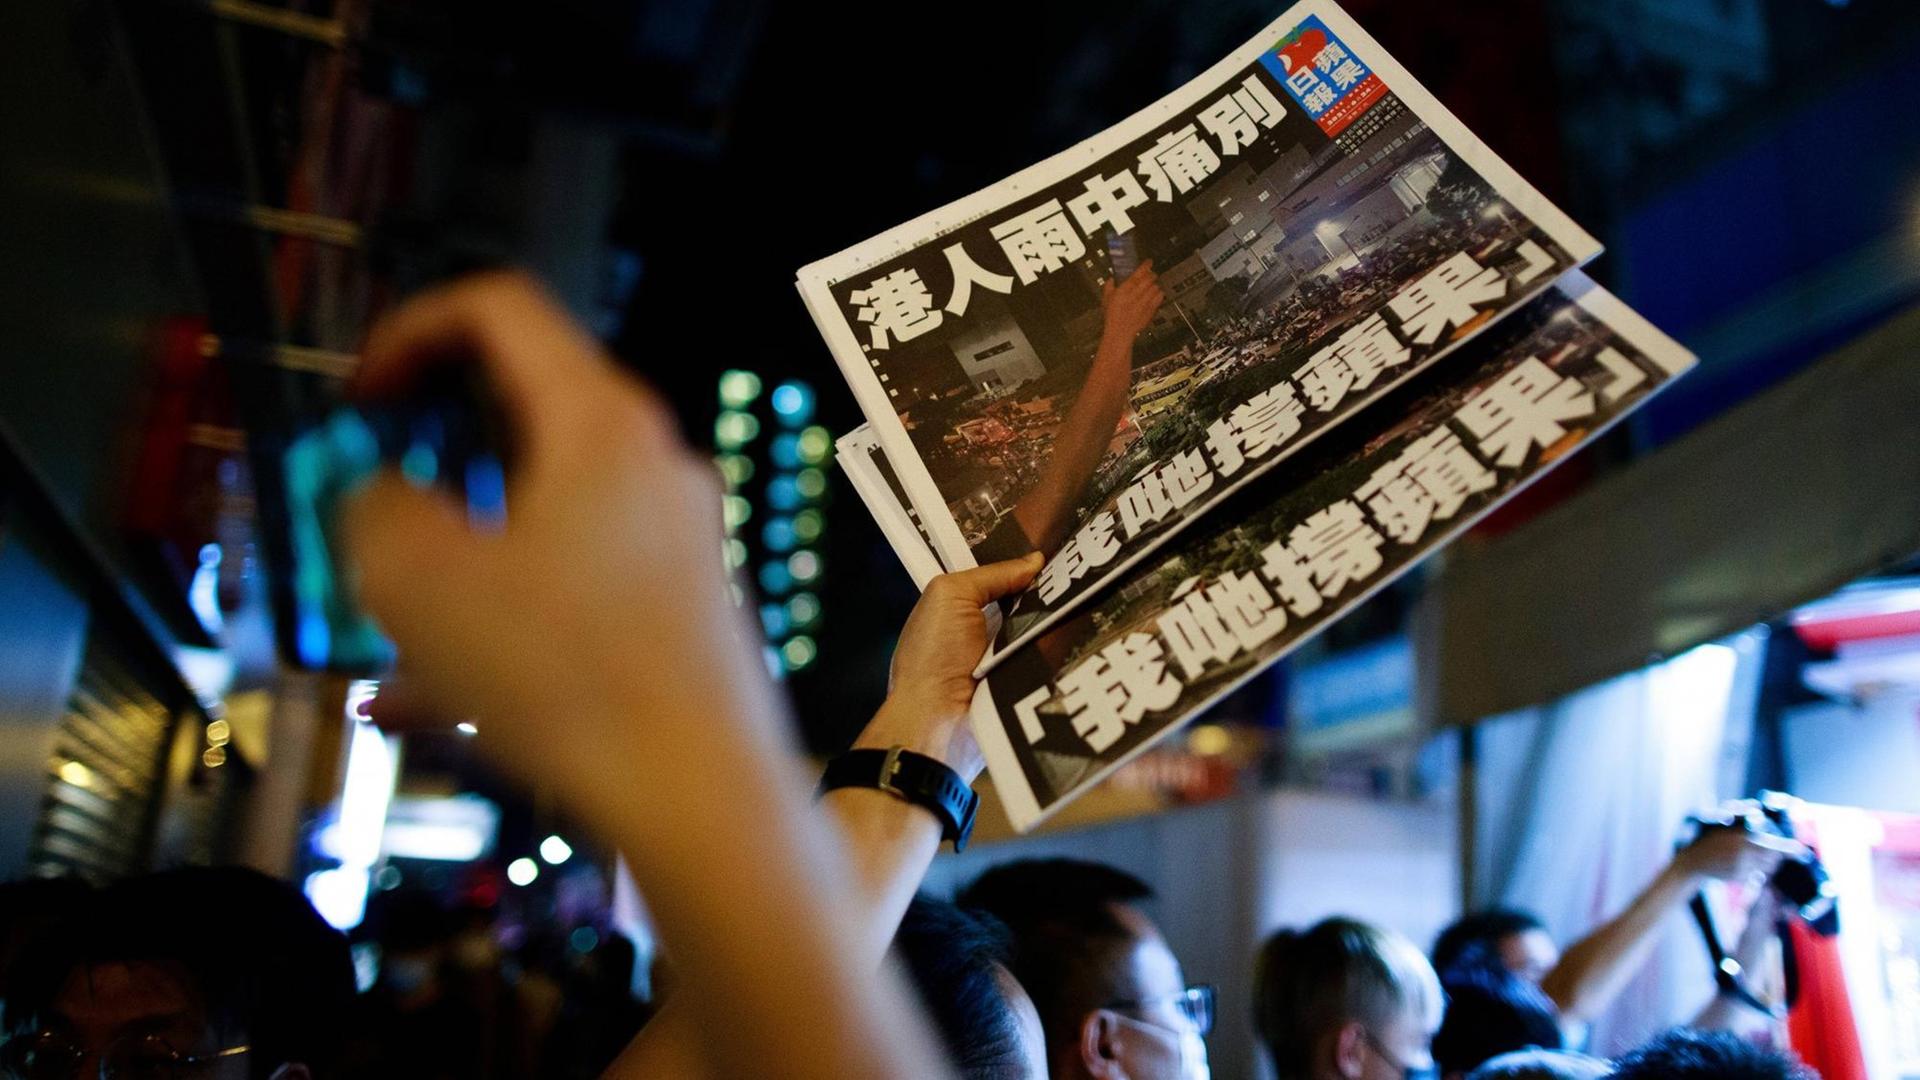 Ein Mann hält zwei exemplare der letzten Ausgabe der Hongkonger Tageszeitung "Apple Daily" in die Höhe.